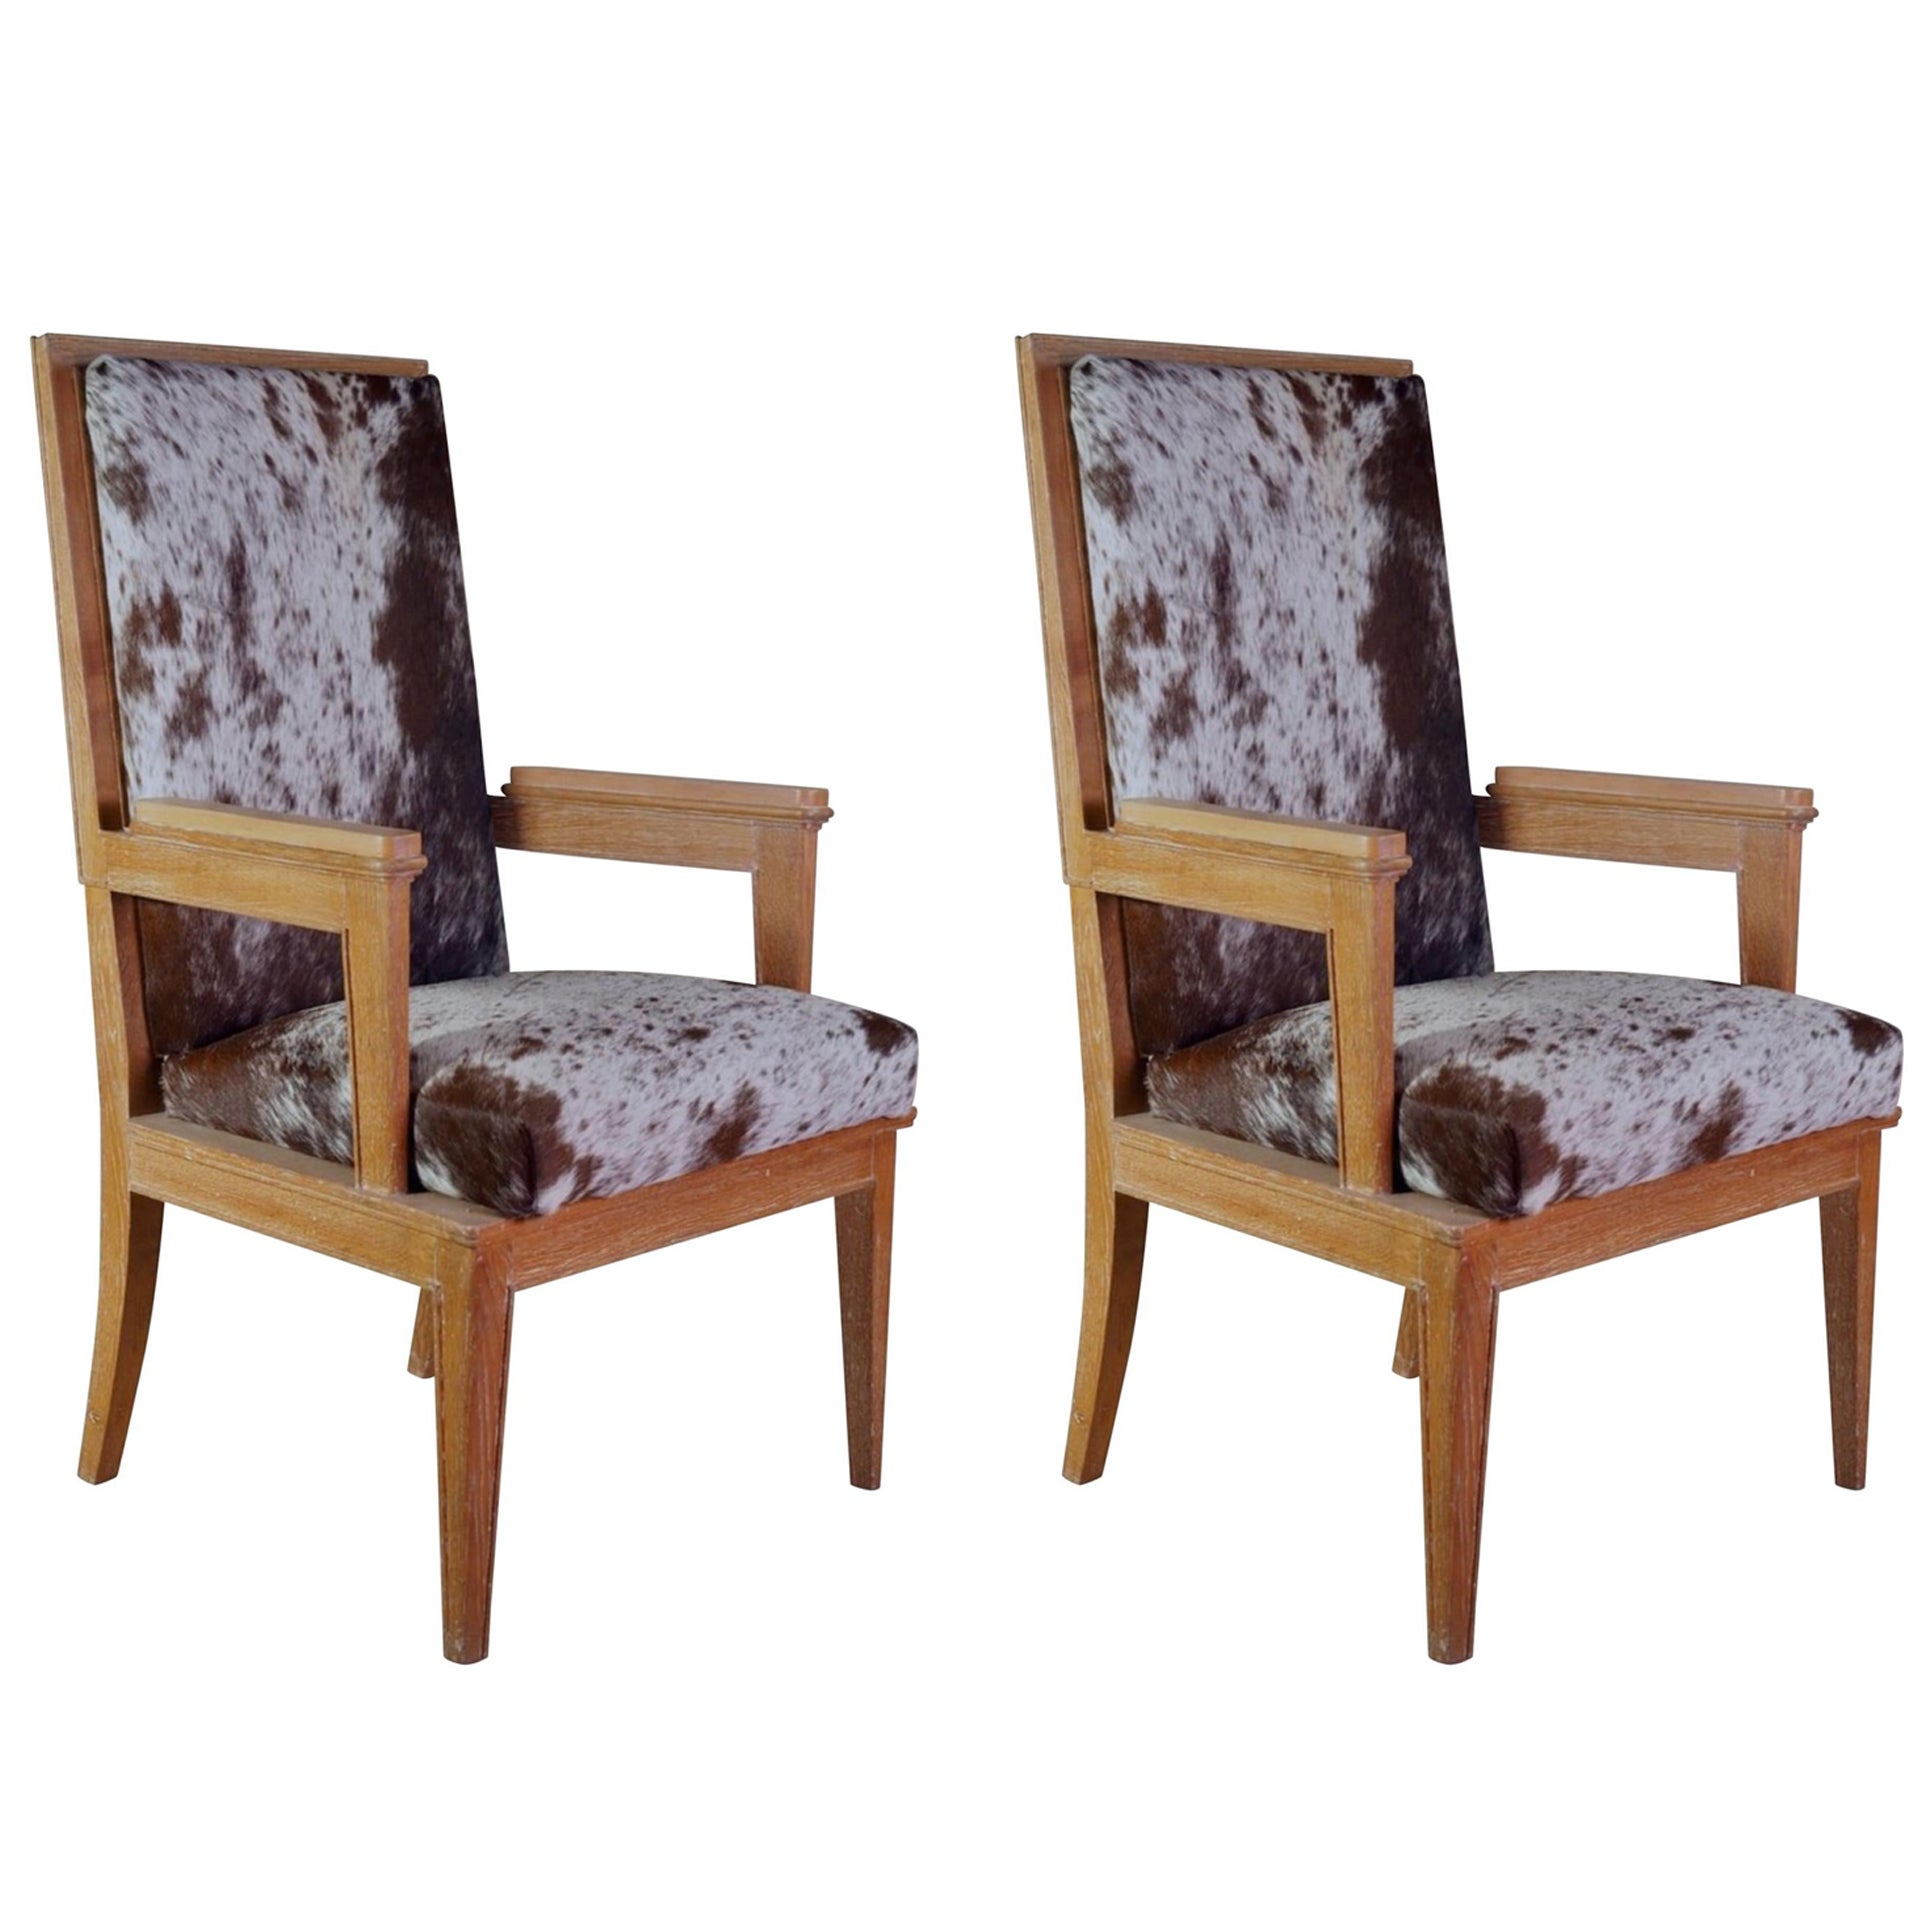 Maurice Jallot - Paire de fauteuils en chêne avec cuir de poney